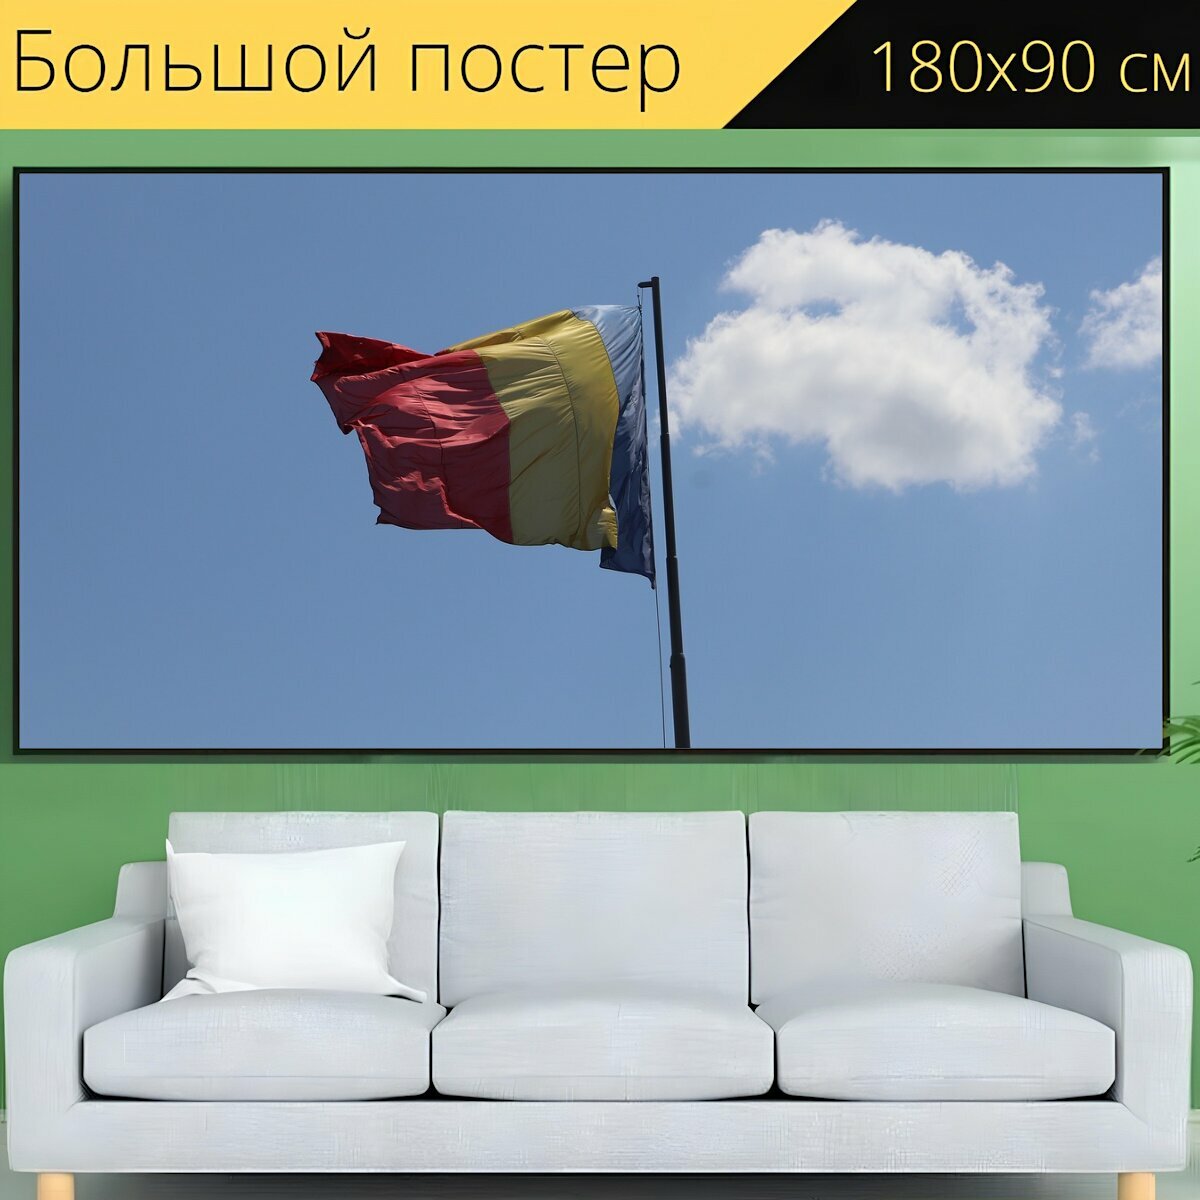 Большой постер "Флаг, румынский флаг, национальный флаг" 180 x 90 см. для интерьера